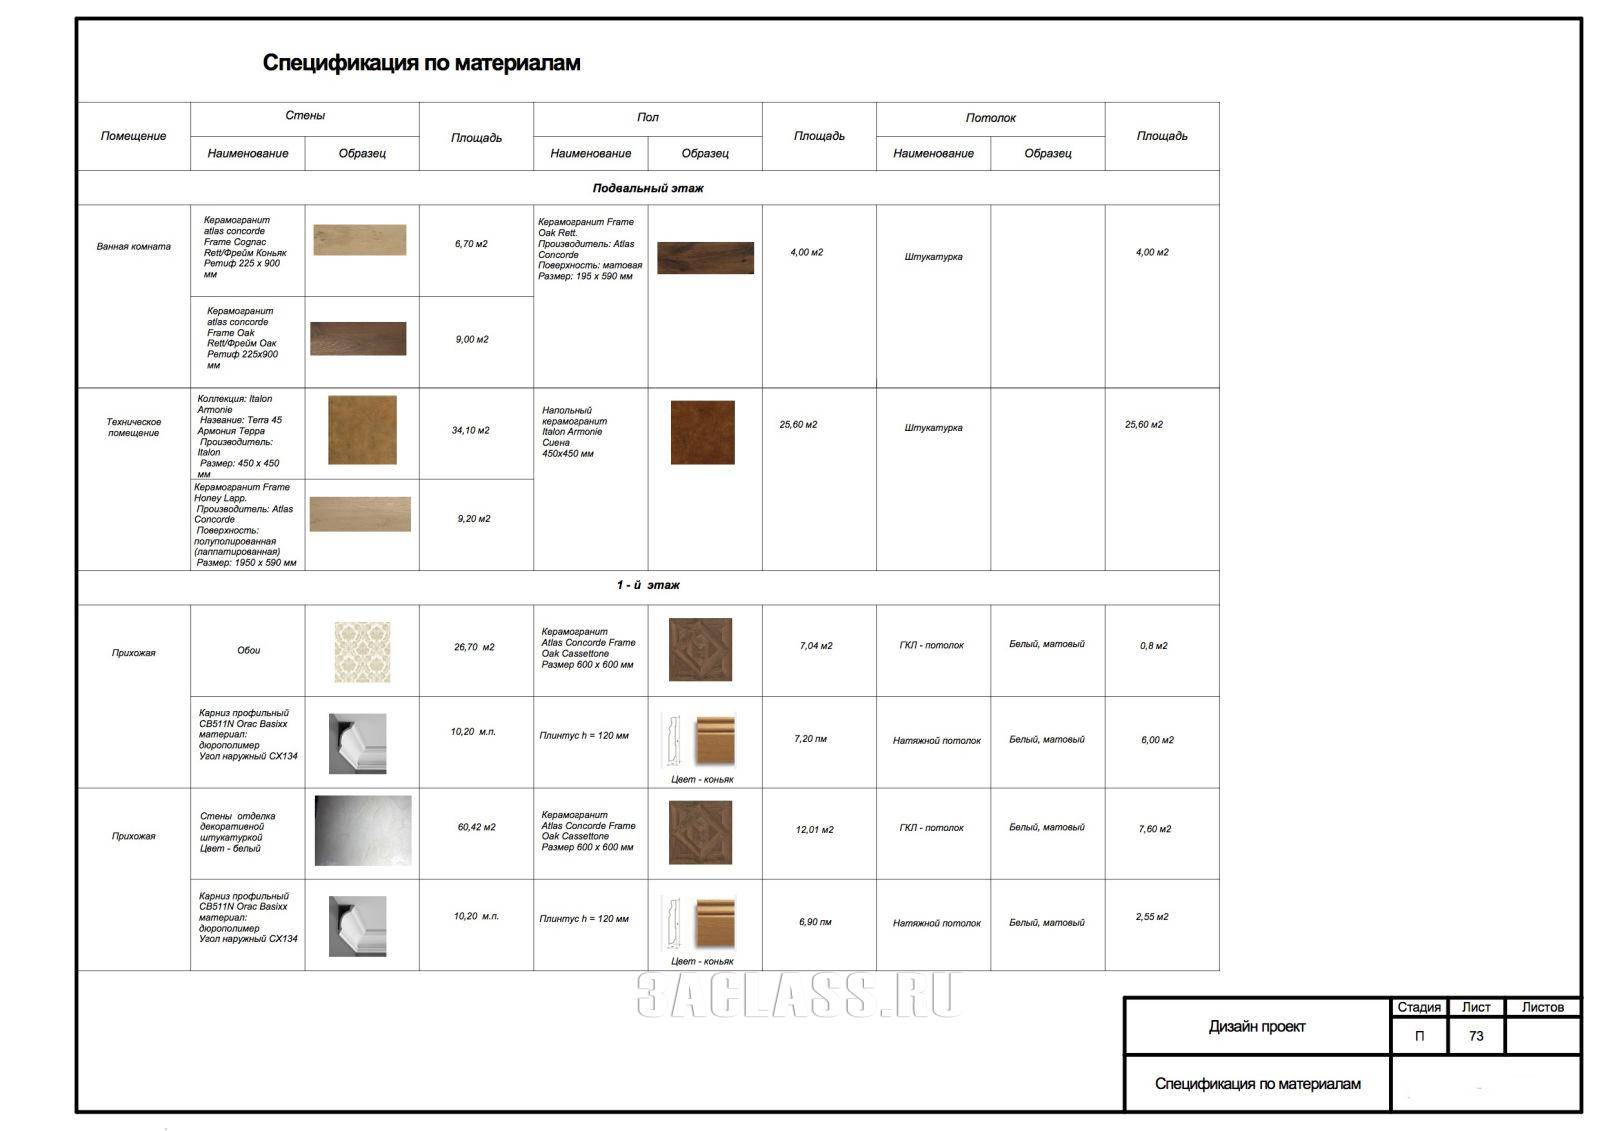 Керамогранит — характеристики, особенности выбора плитки